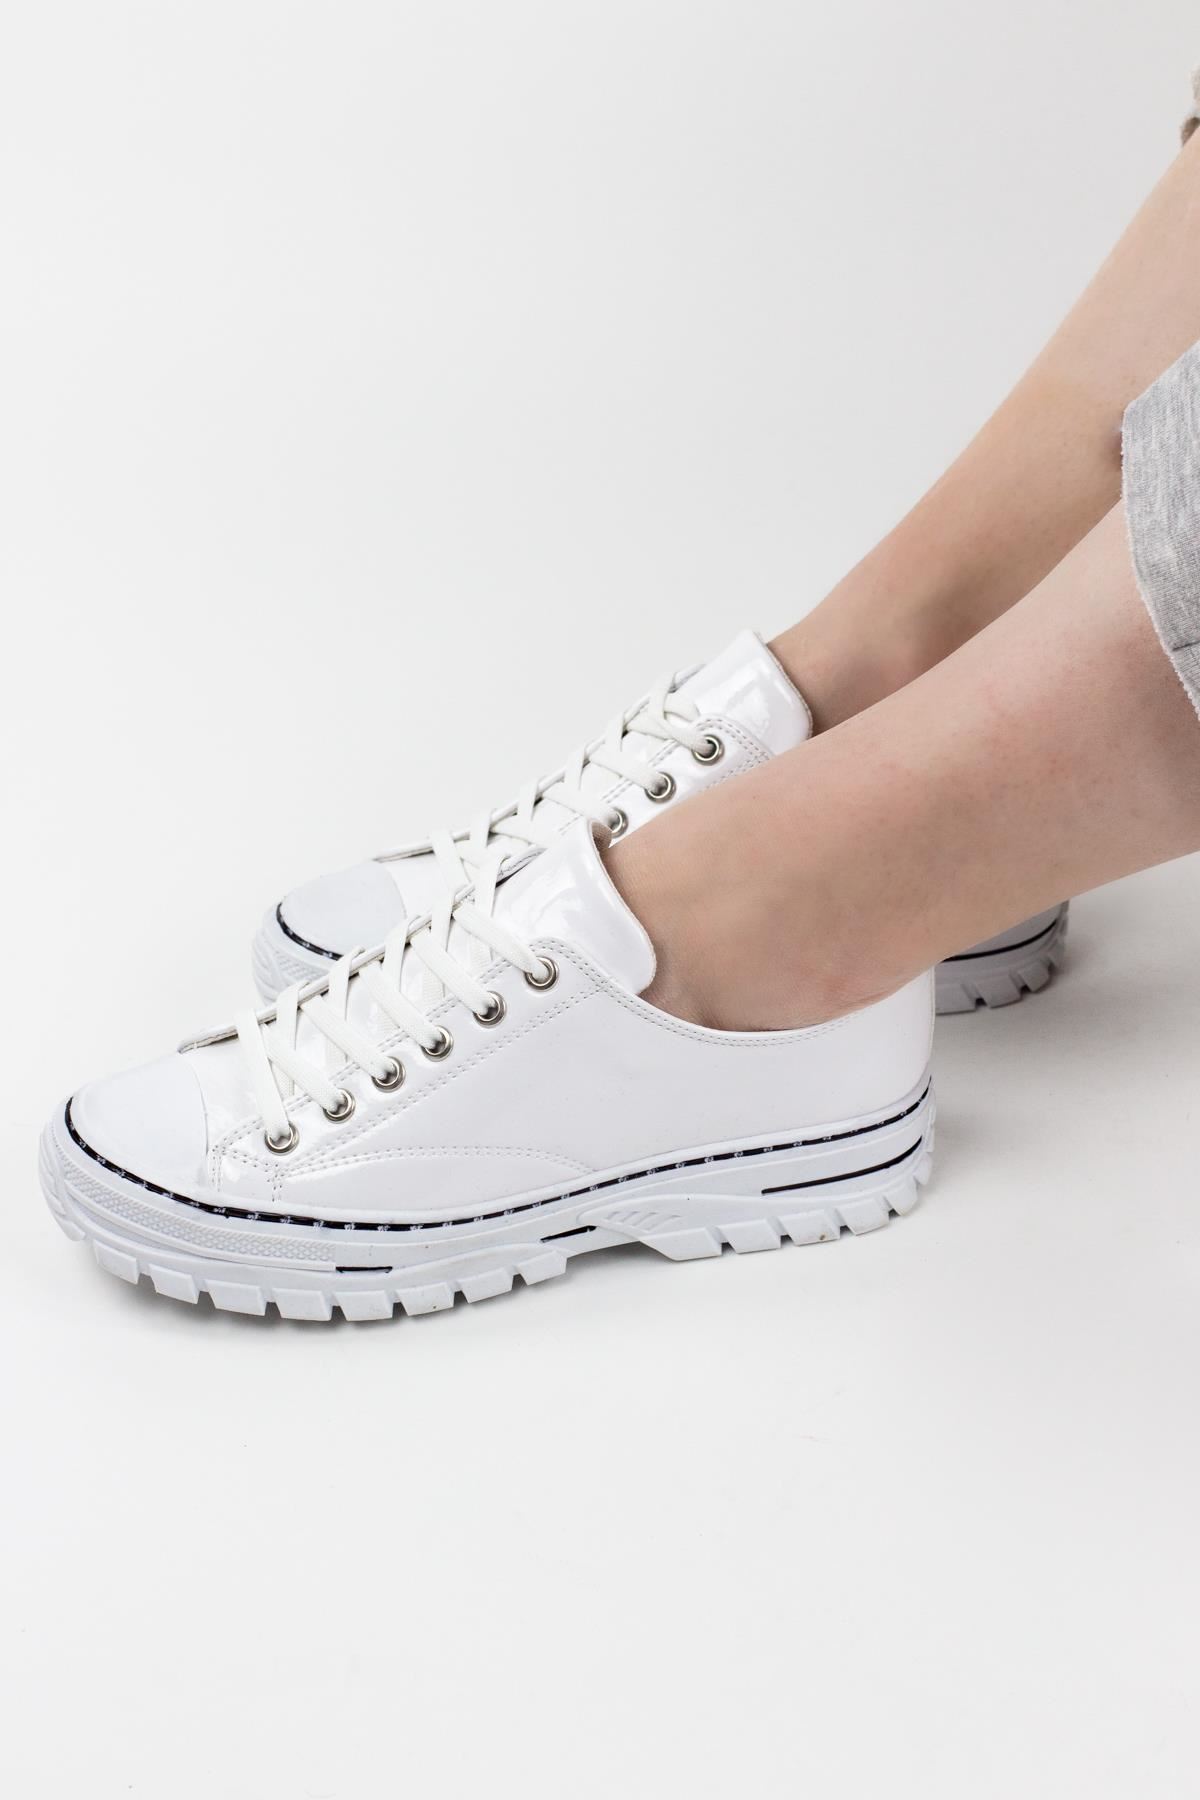 Asante Kadın Sneaker Spor Ayakkabı Beyaz Kırışık